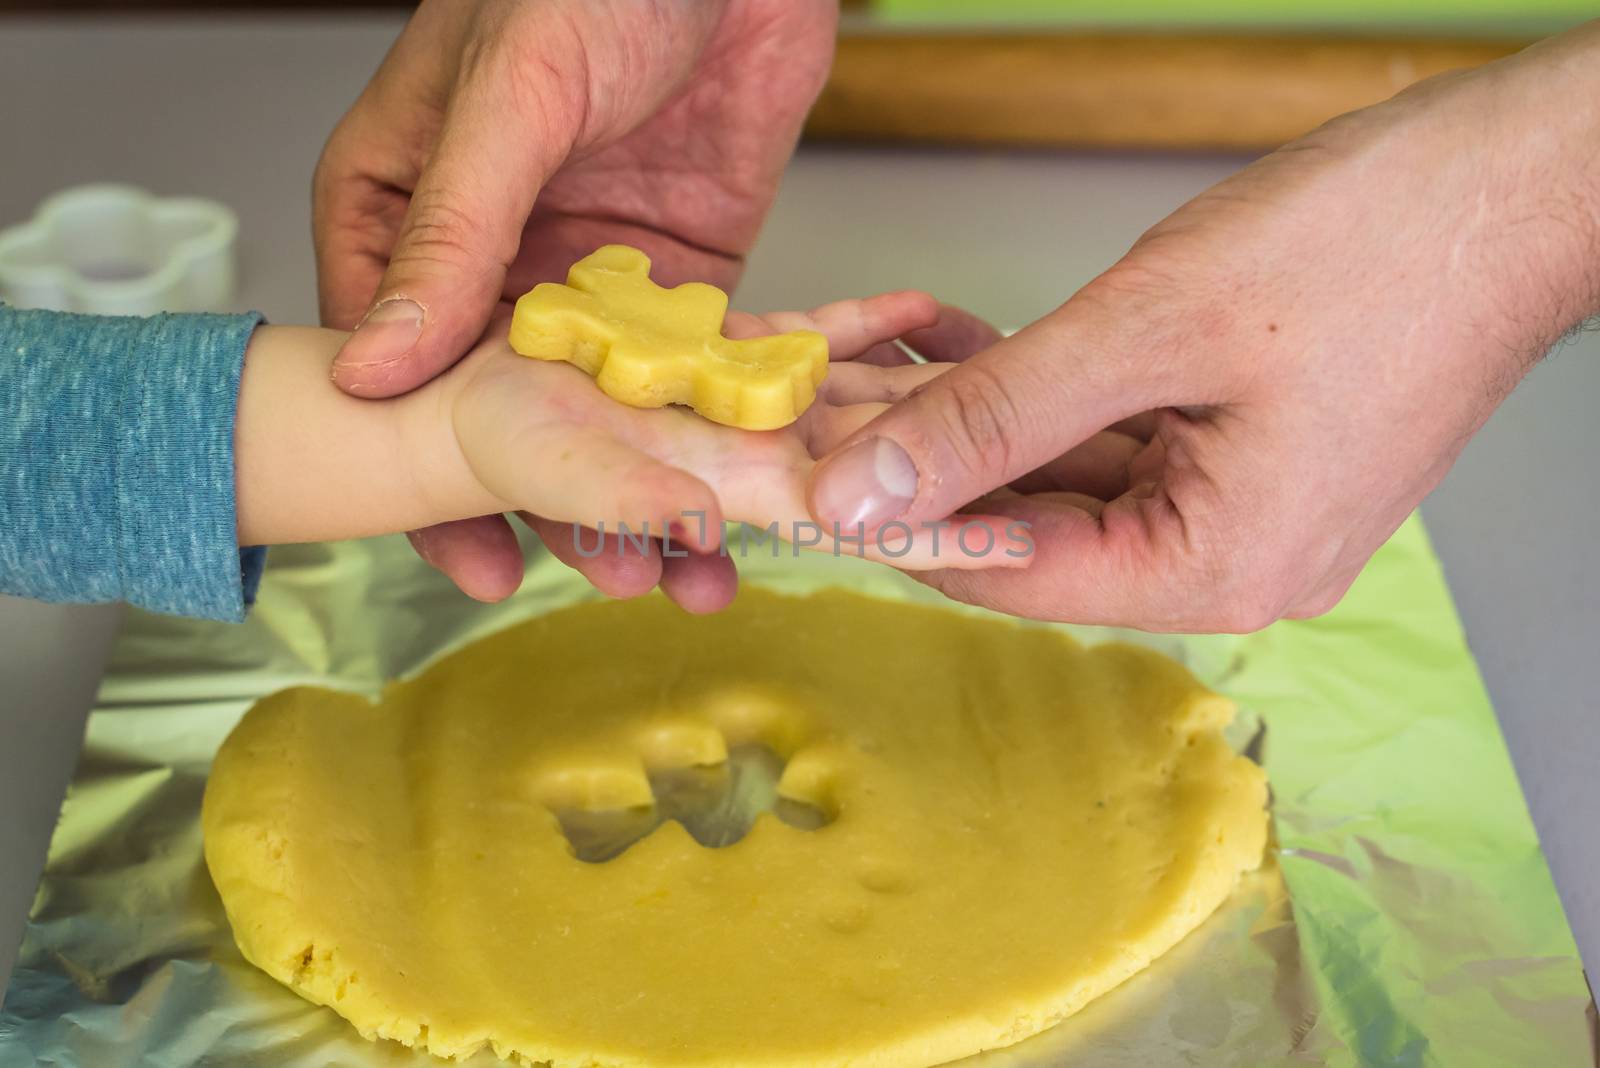 shortcrust dough for children's hands with dad hands